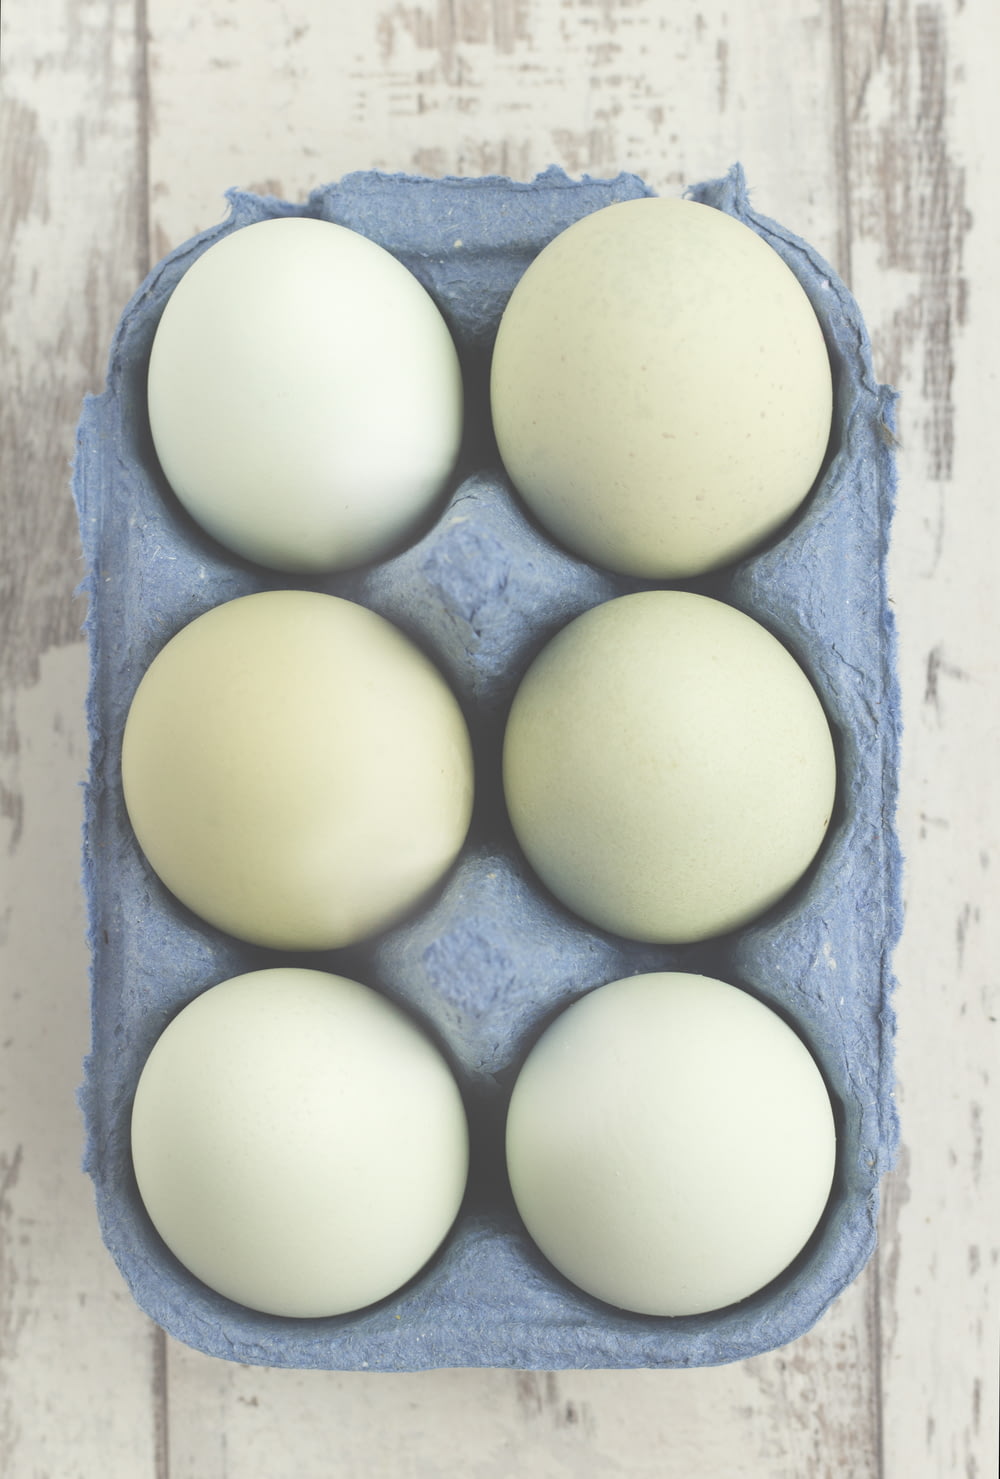 seis ovos brancos colocados na bandeja cinza